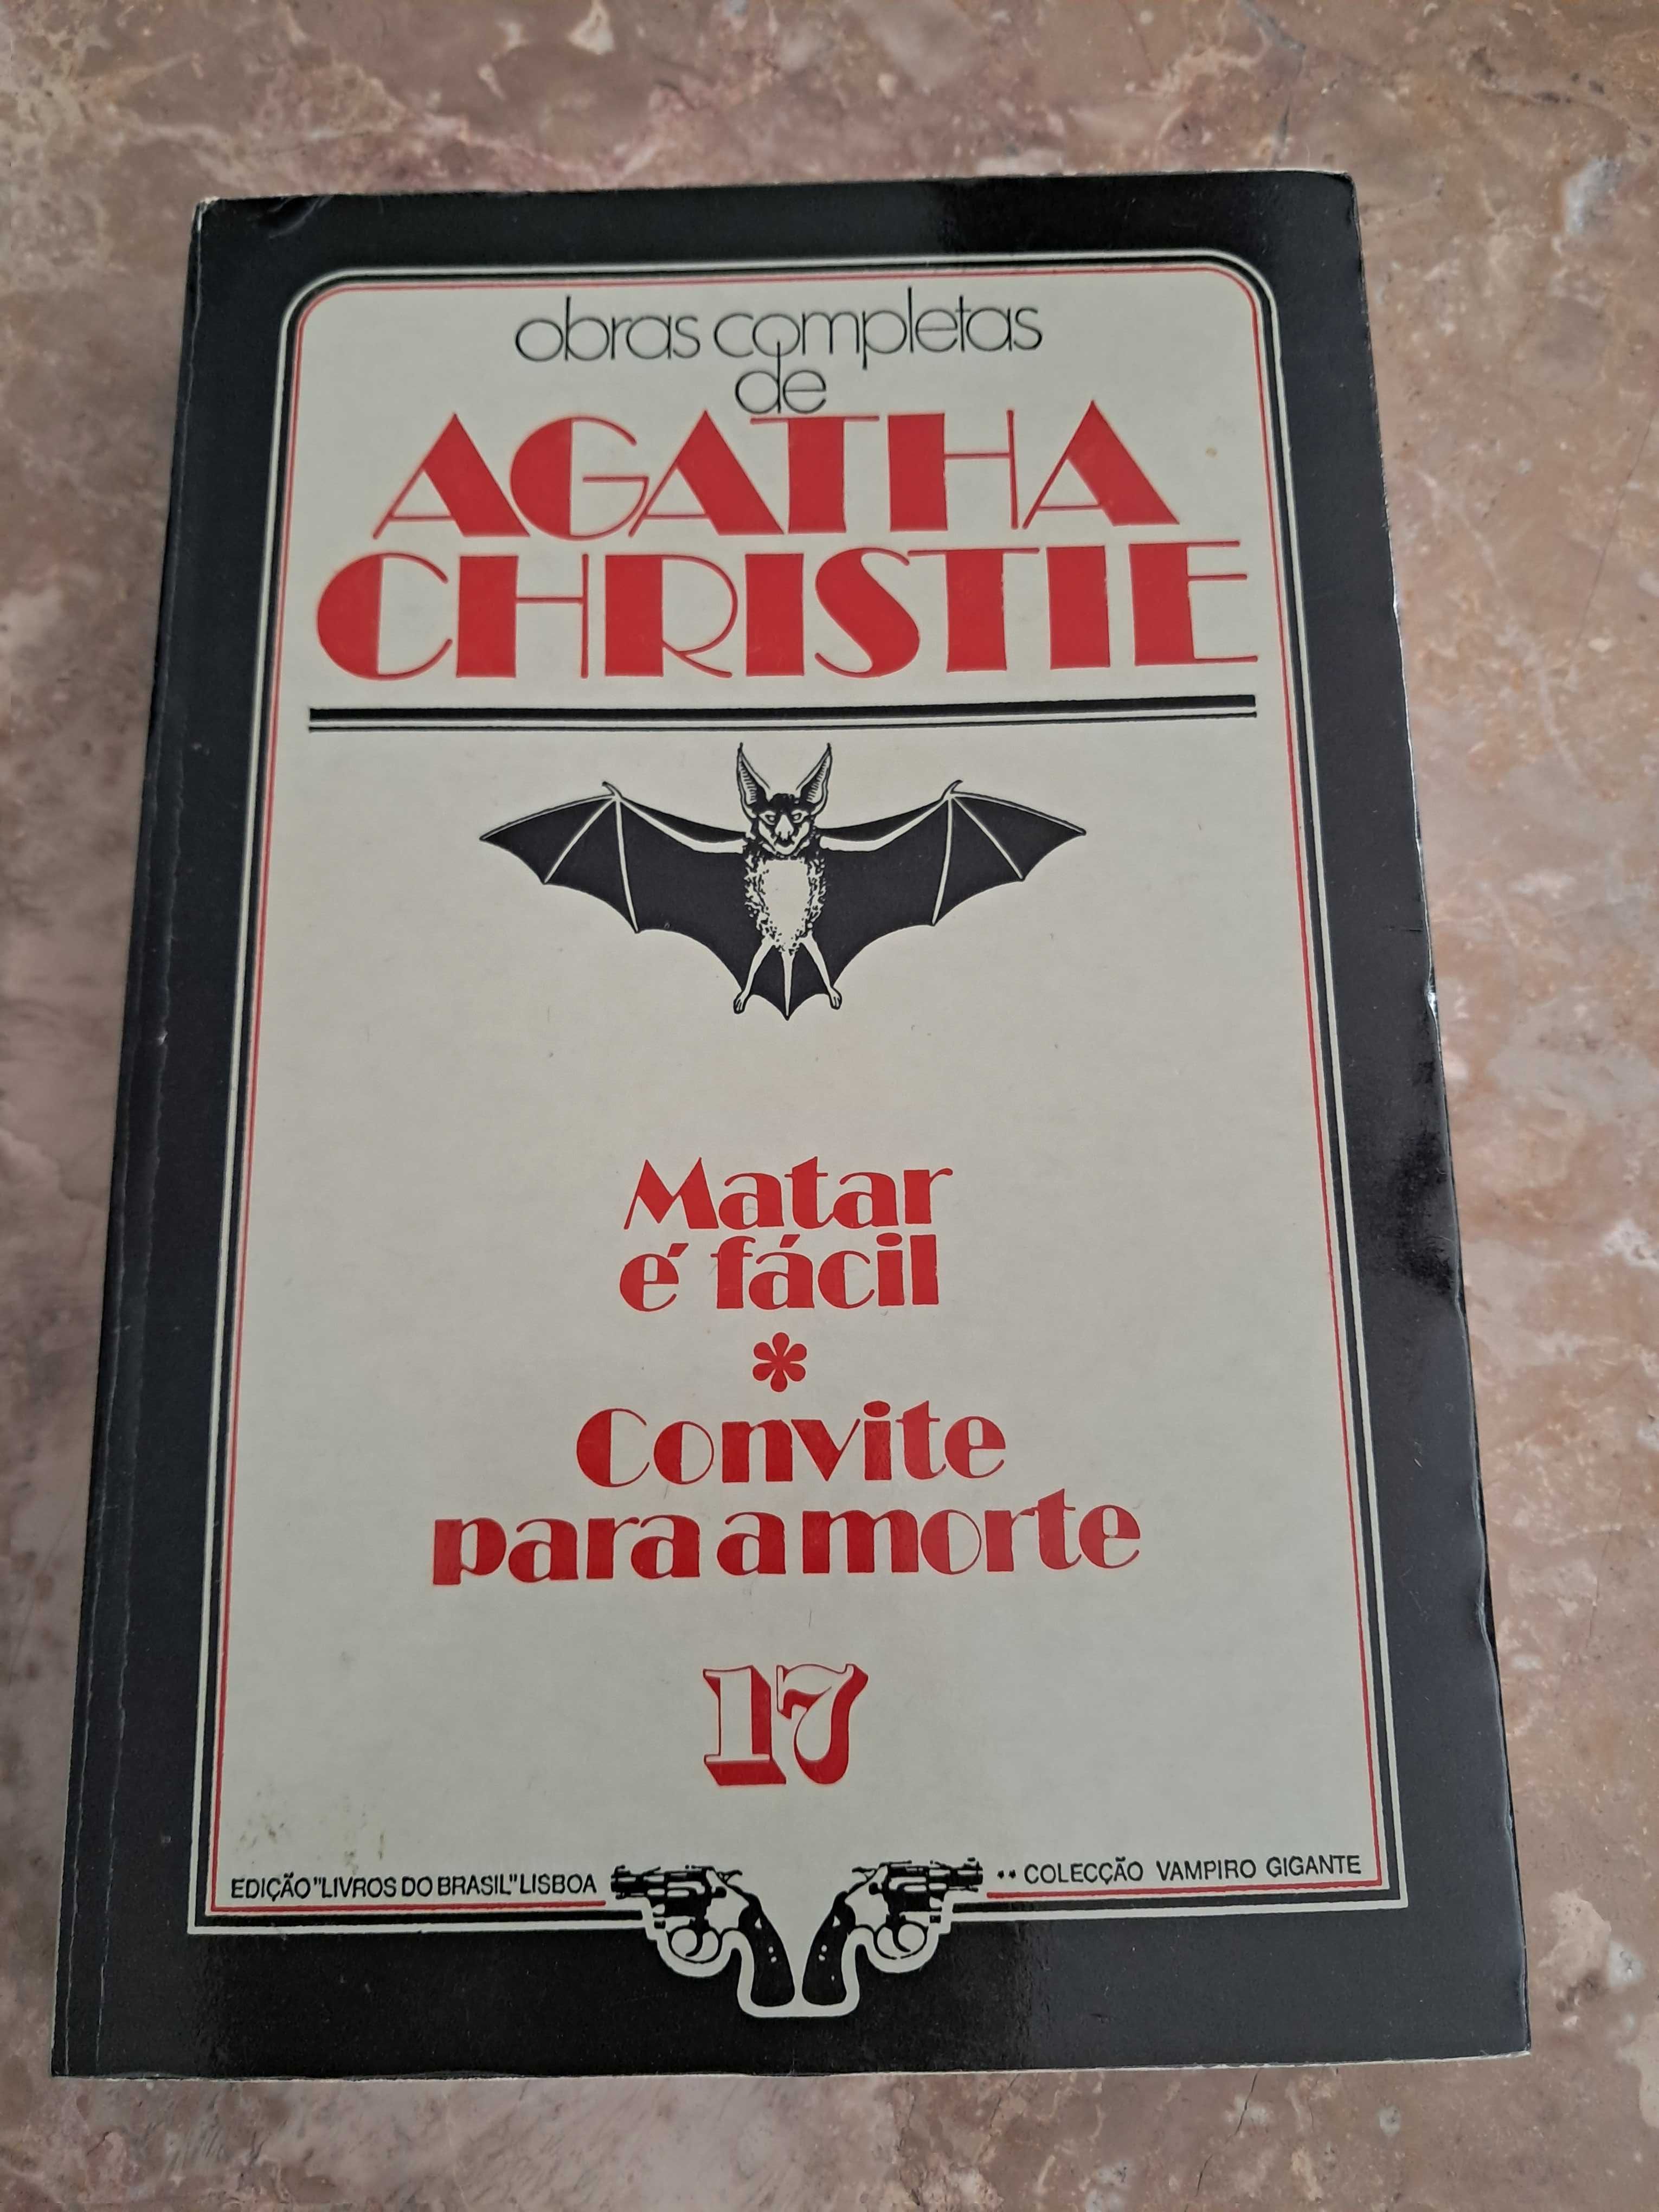 Colecção: Vampiro Gigante - Obras Completas de Agatha Christie